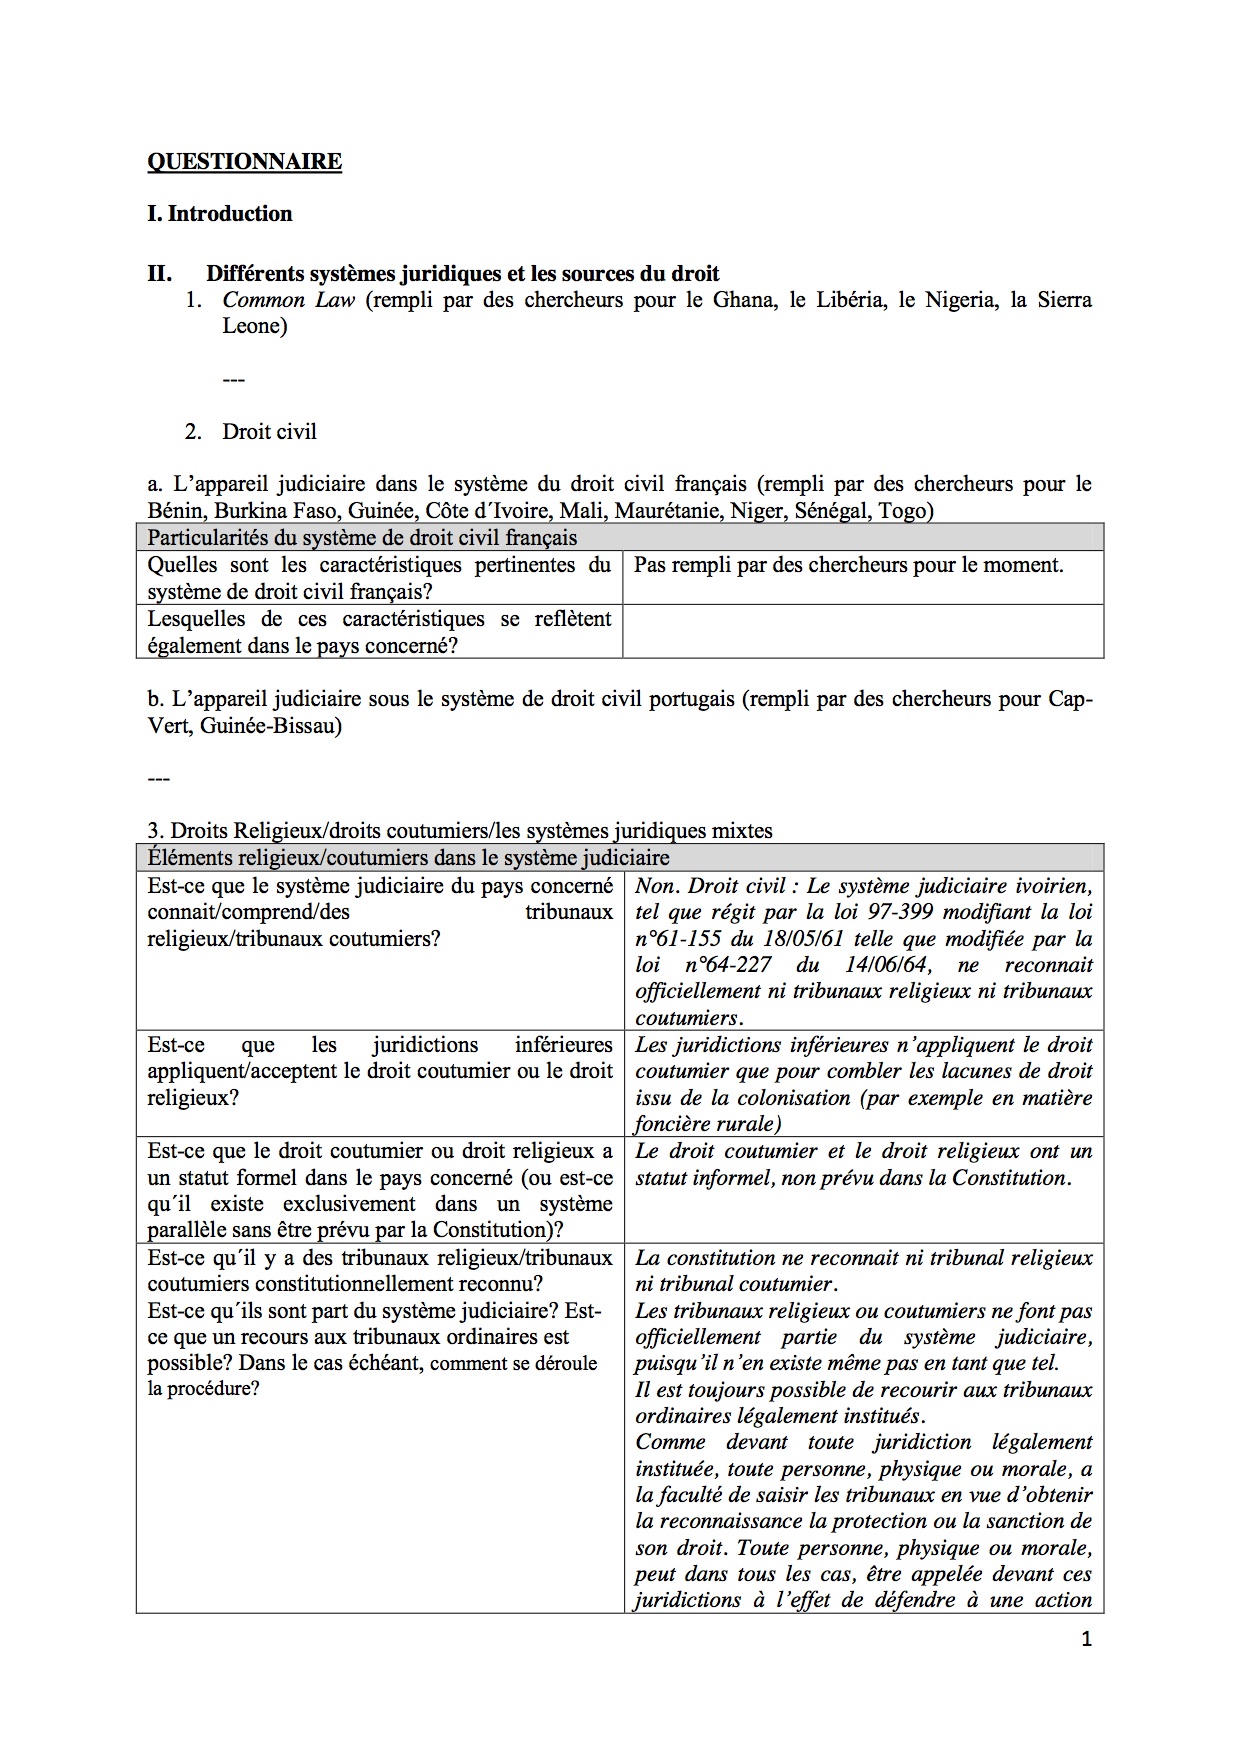 Rule of Law Questionnaire - Cote D'Ivoire